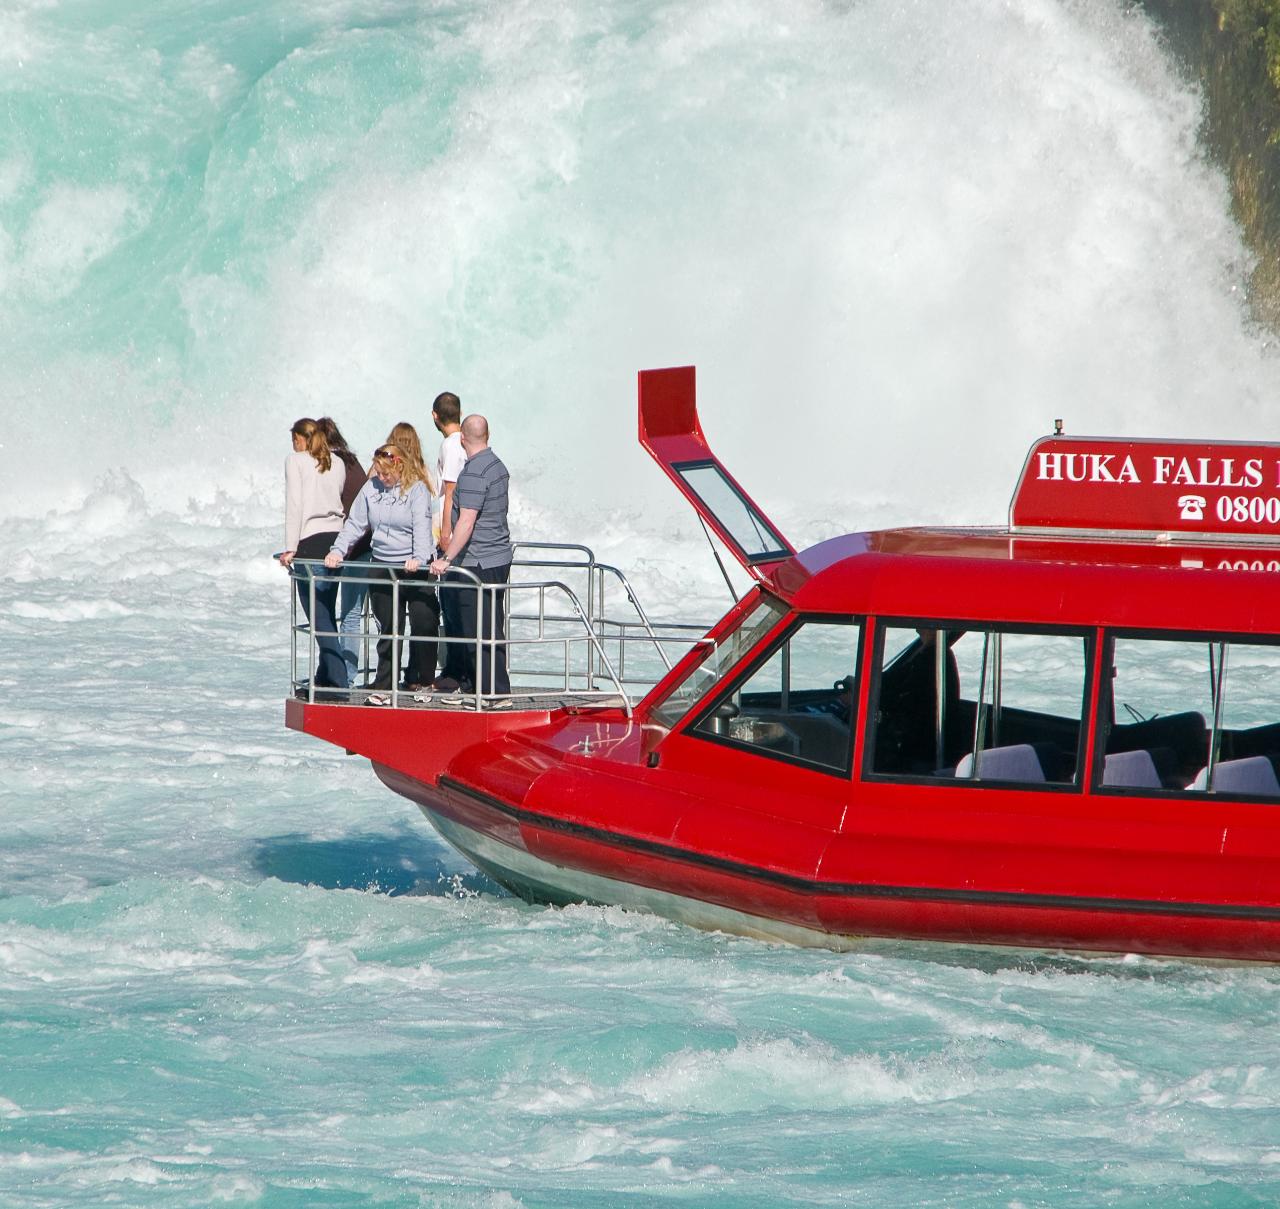 Combo- Rapids Jet + Hukafalls River Cruise 